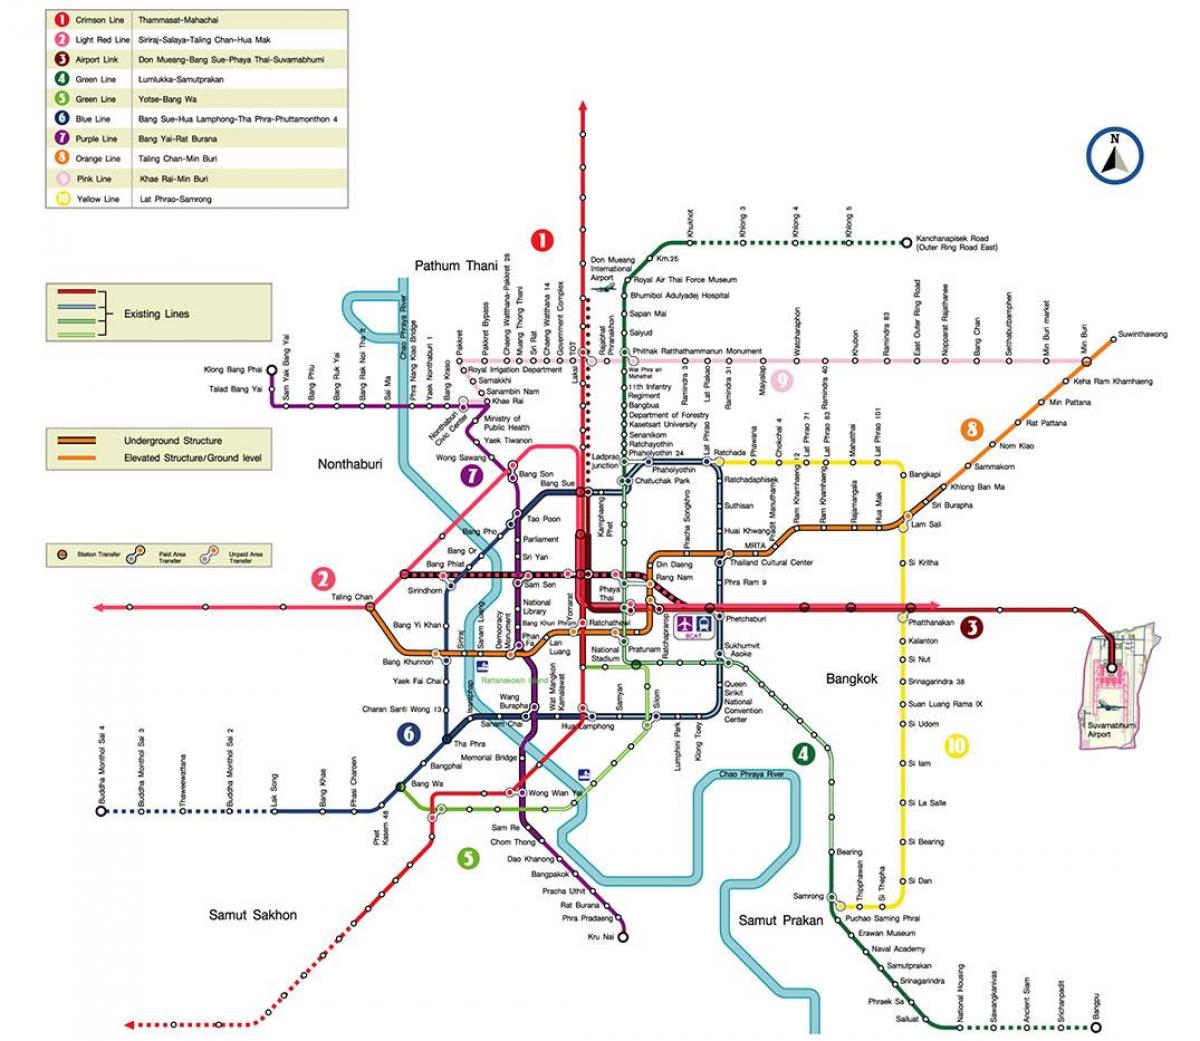 Tìm hiểu ngay bản đồ tàu điện ngầm Bangkok năm 2024 với hệ thống liên kết khắp thành phố. Bằng cách sử dụng tàu điện ngầm, đi lại nhanh chóng, tiết kiệm chi phí và được bảo đảm về sức khỏe. Tận hưởng chuyến đi đầy mới mẻ và đáng nhớ tại Bangkok với tàu điện ngầm.